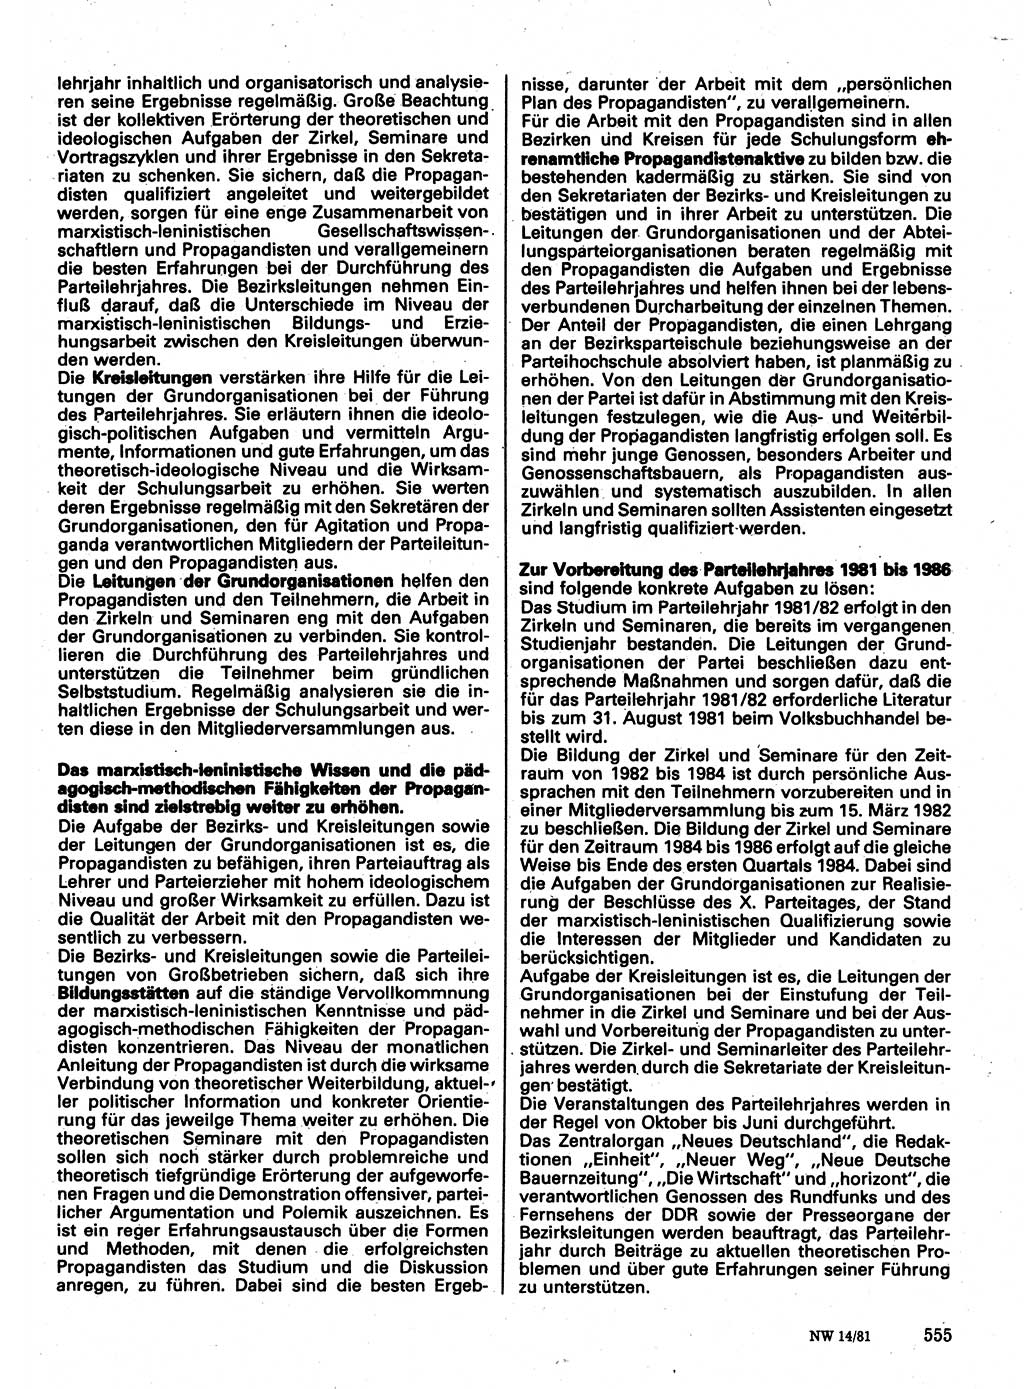 Neuer Weg (NW), Organ des Zentralkomitees (ZK) der SED (Sozialistische Einheitspartei Deutschlands) für Fragen des Parteilebens, 36. Jahrgang [Deutsche Demokratische Republik (DDR)] 1981, Seite 555 (NW ZK SED DDR 1981, S. 555)